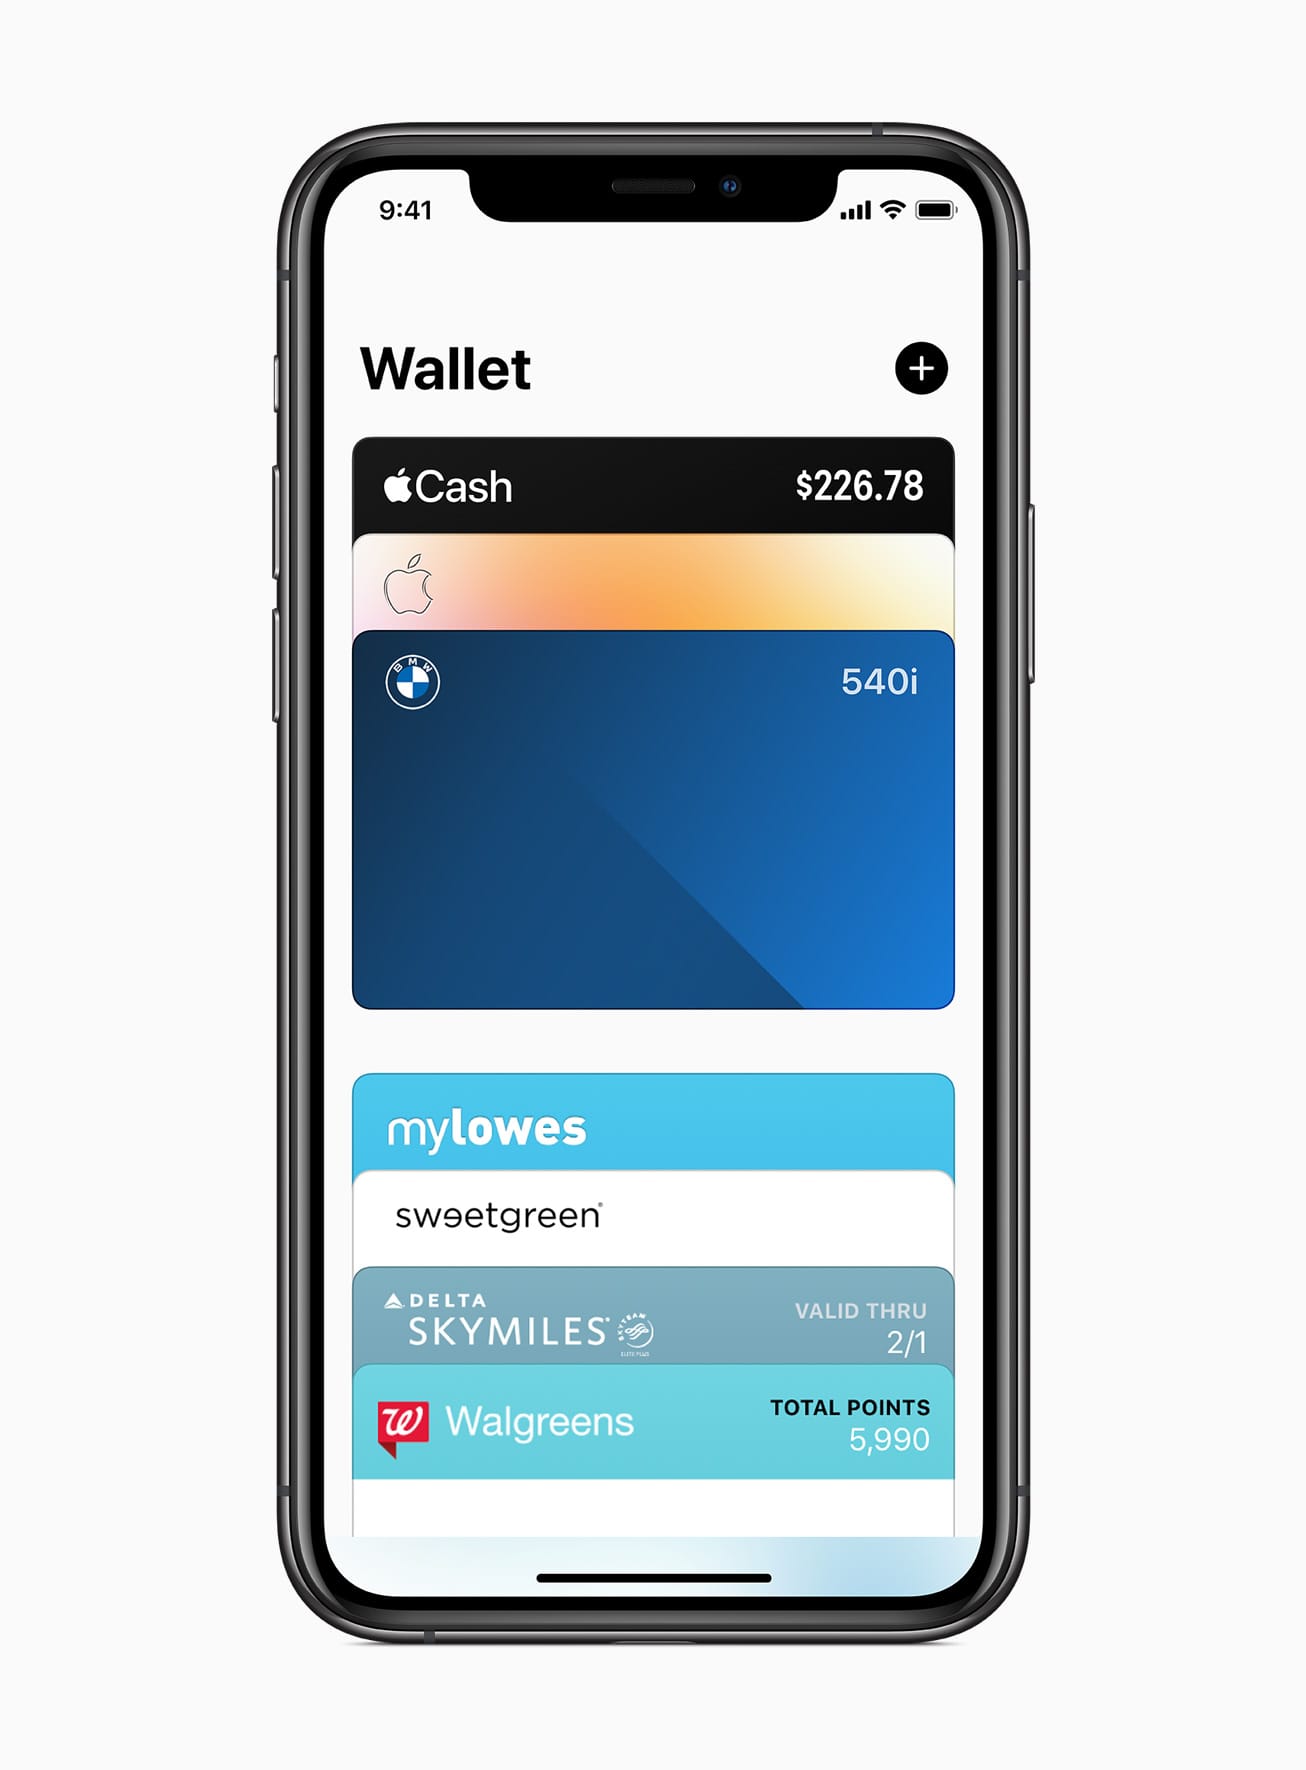 In der digitalen Geldbeutel-App Wallet werden nun nicht nur Zahlungsmittel für Apple Pay gespeichert, sondern auch digitale Autoschlüssel, mit denen man per iPhone oder Apple Watch sein Auto aufschließen und starten kann.